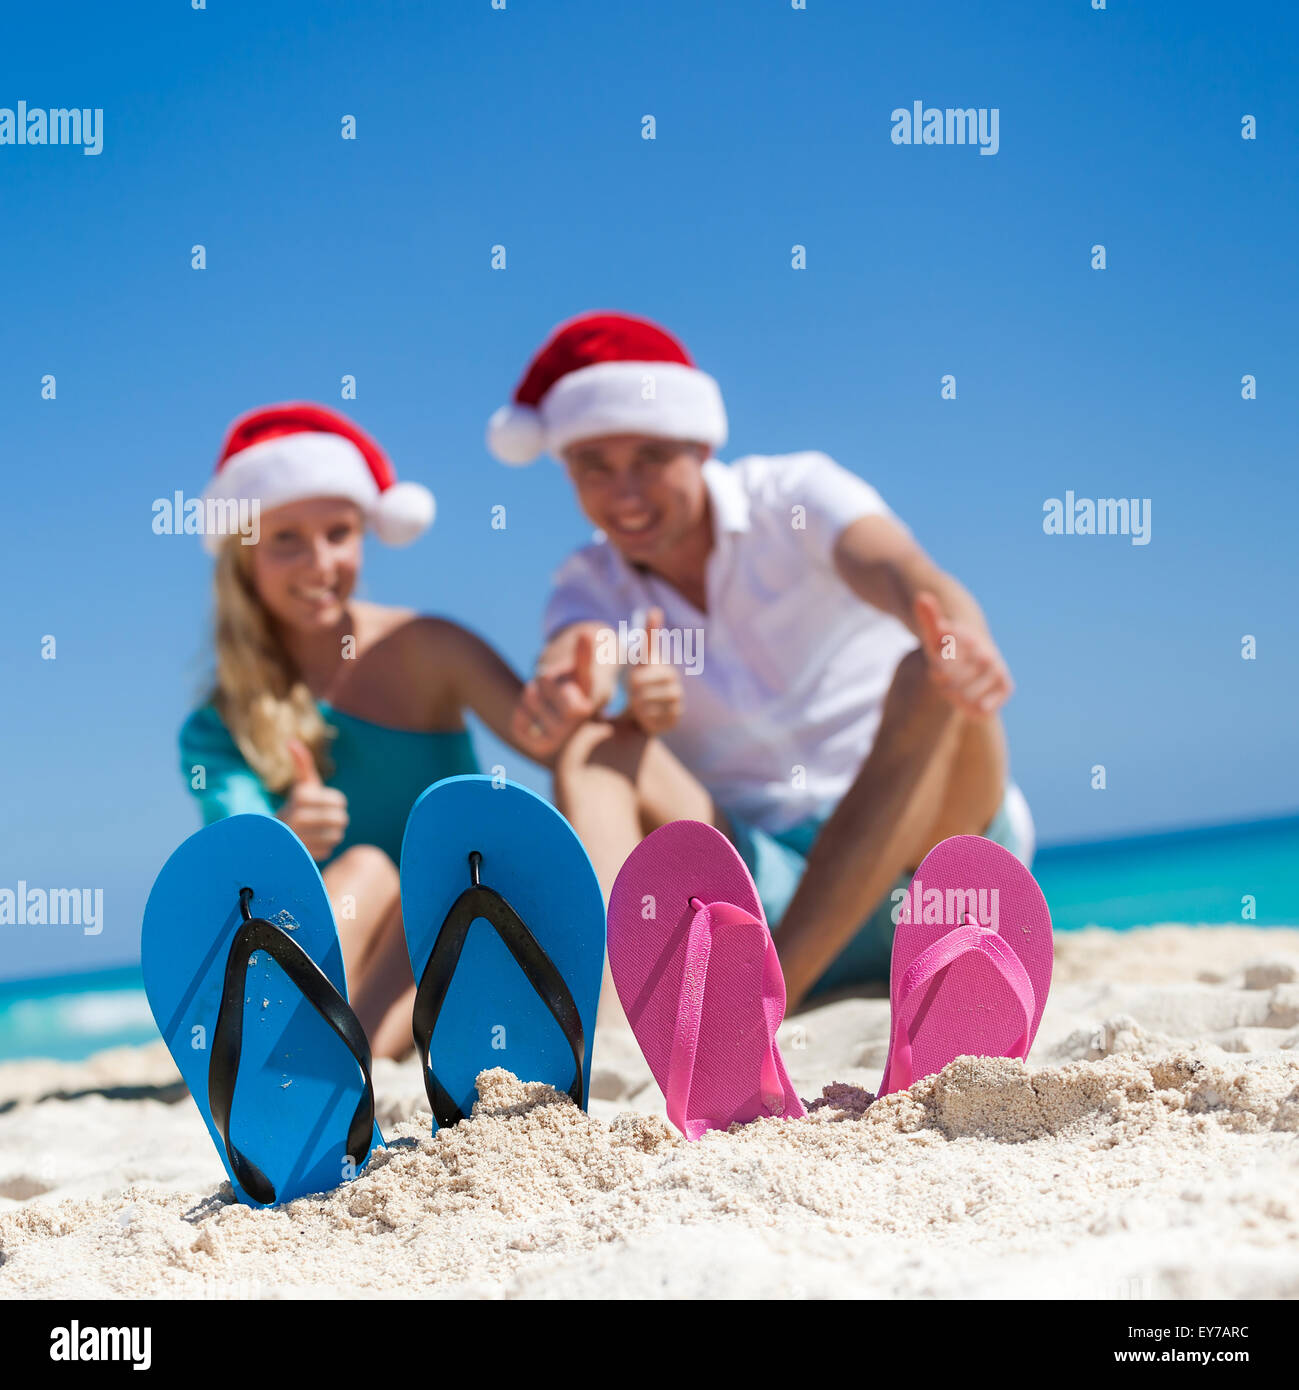 Karibik Weihnachten Urlaub am sandigen Strand. Zwei paar Flip flops stehen in einem Sand auf Hintergrund mit emotionalen paar Stockfoto